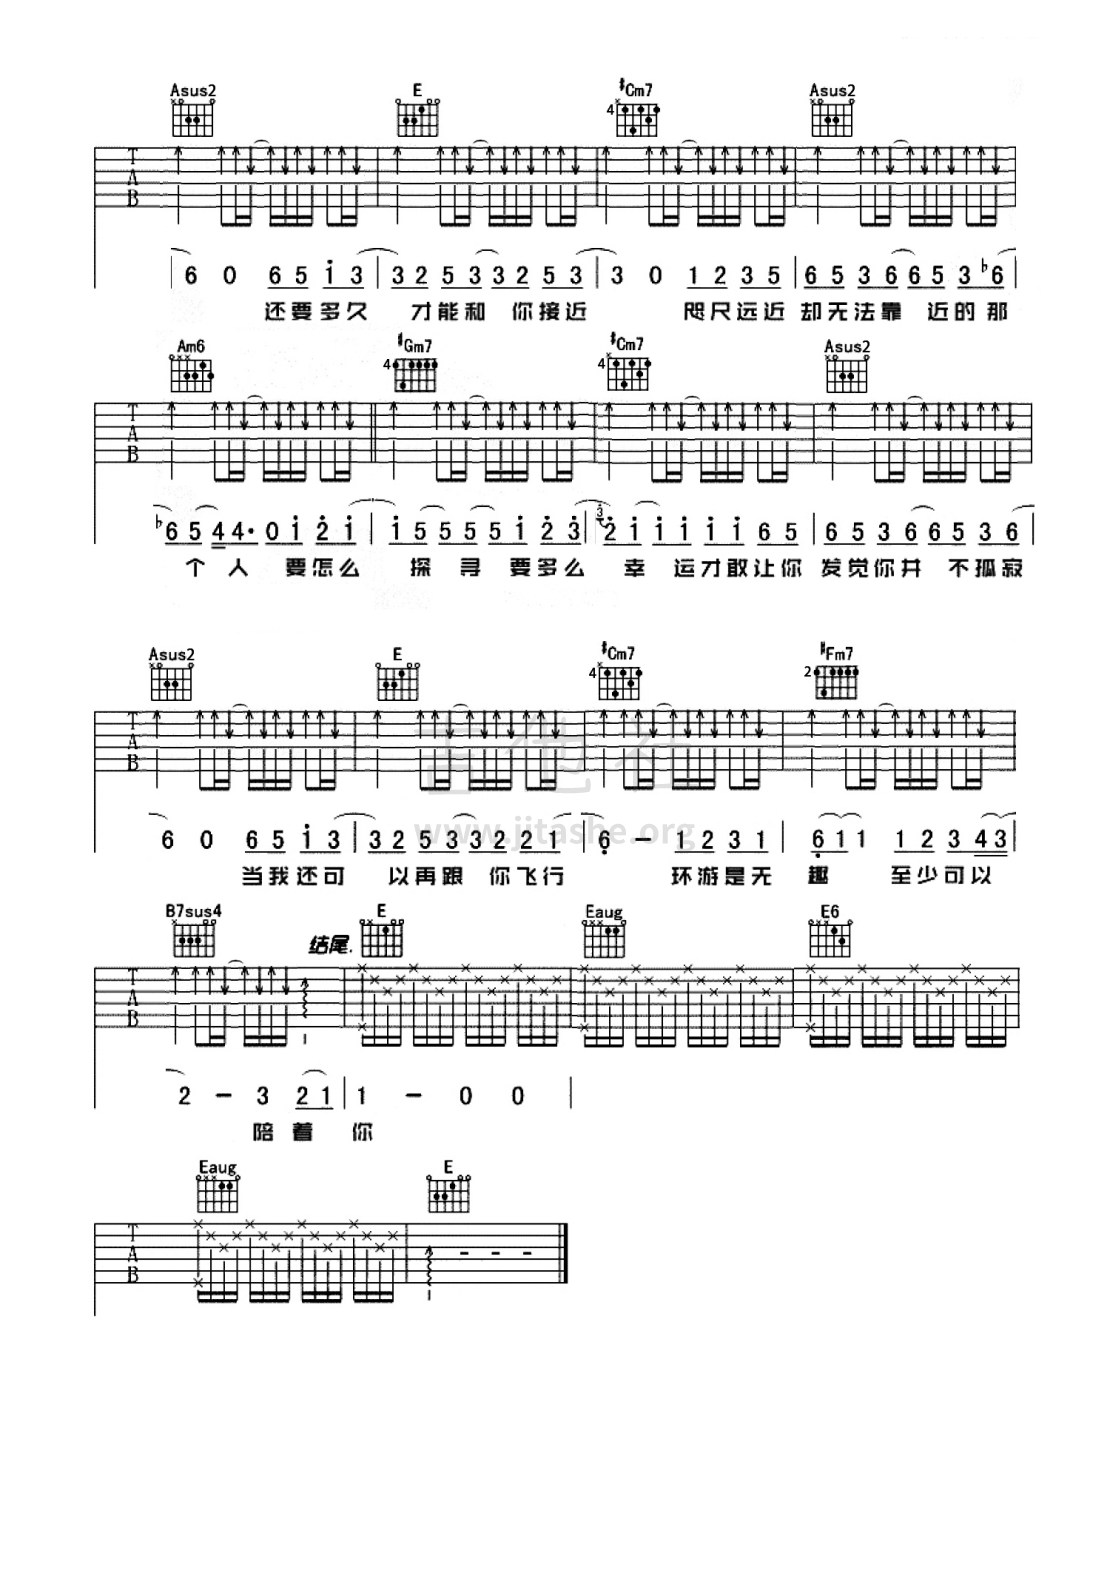 打印:水星记（原版完整版吉他谱，有教学）吉他谱_郭顶_水星记3.jpg